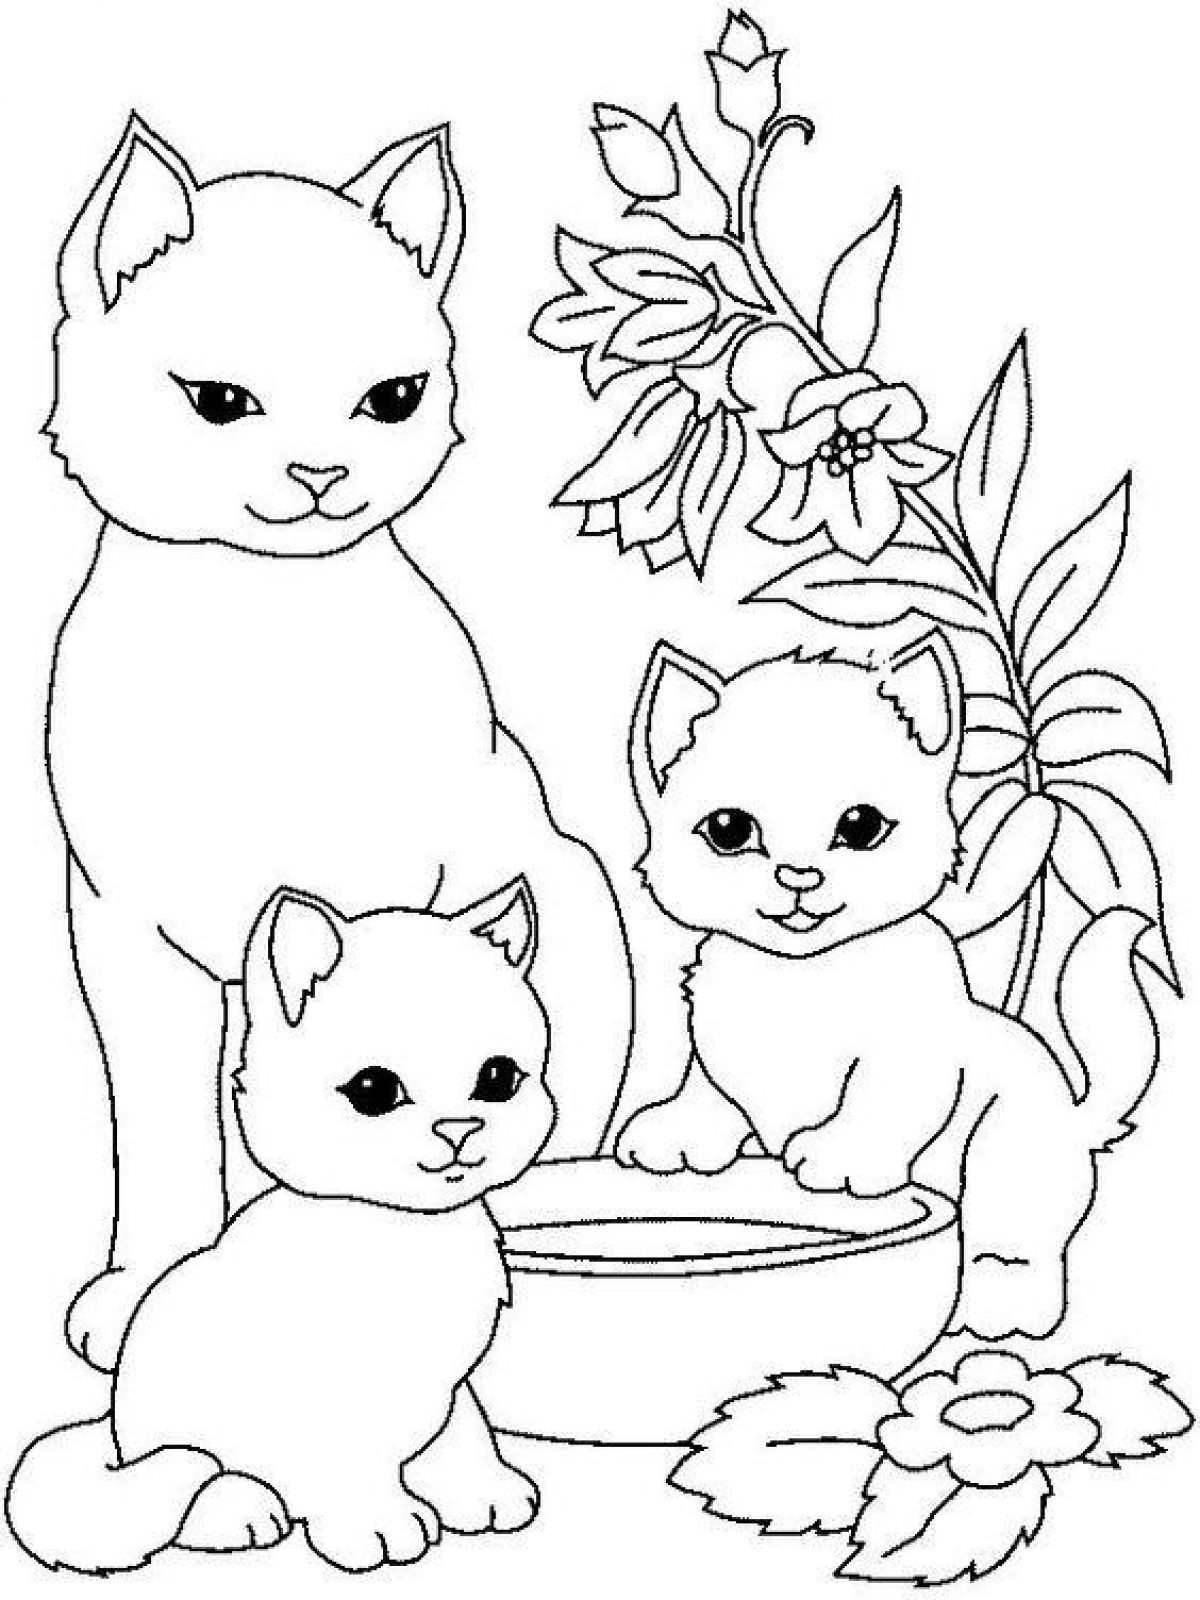 Раскраска Кот играет с детьми распечатать бесплатно